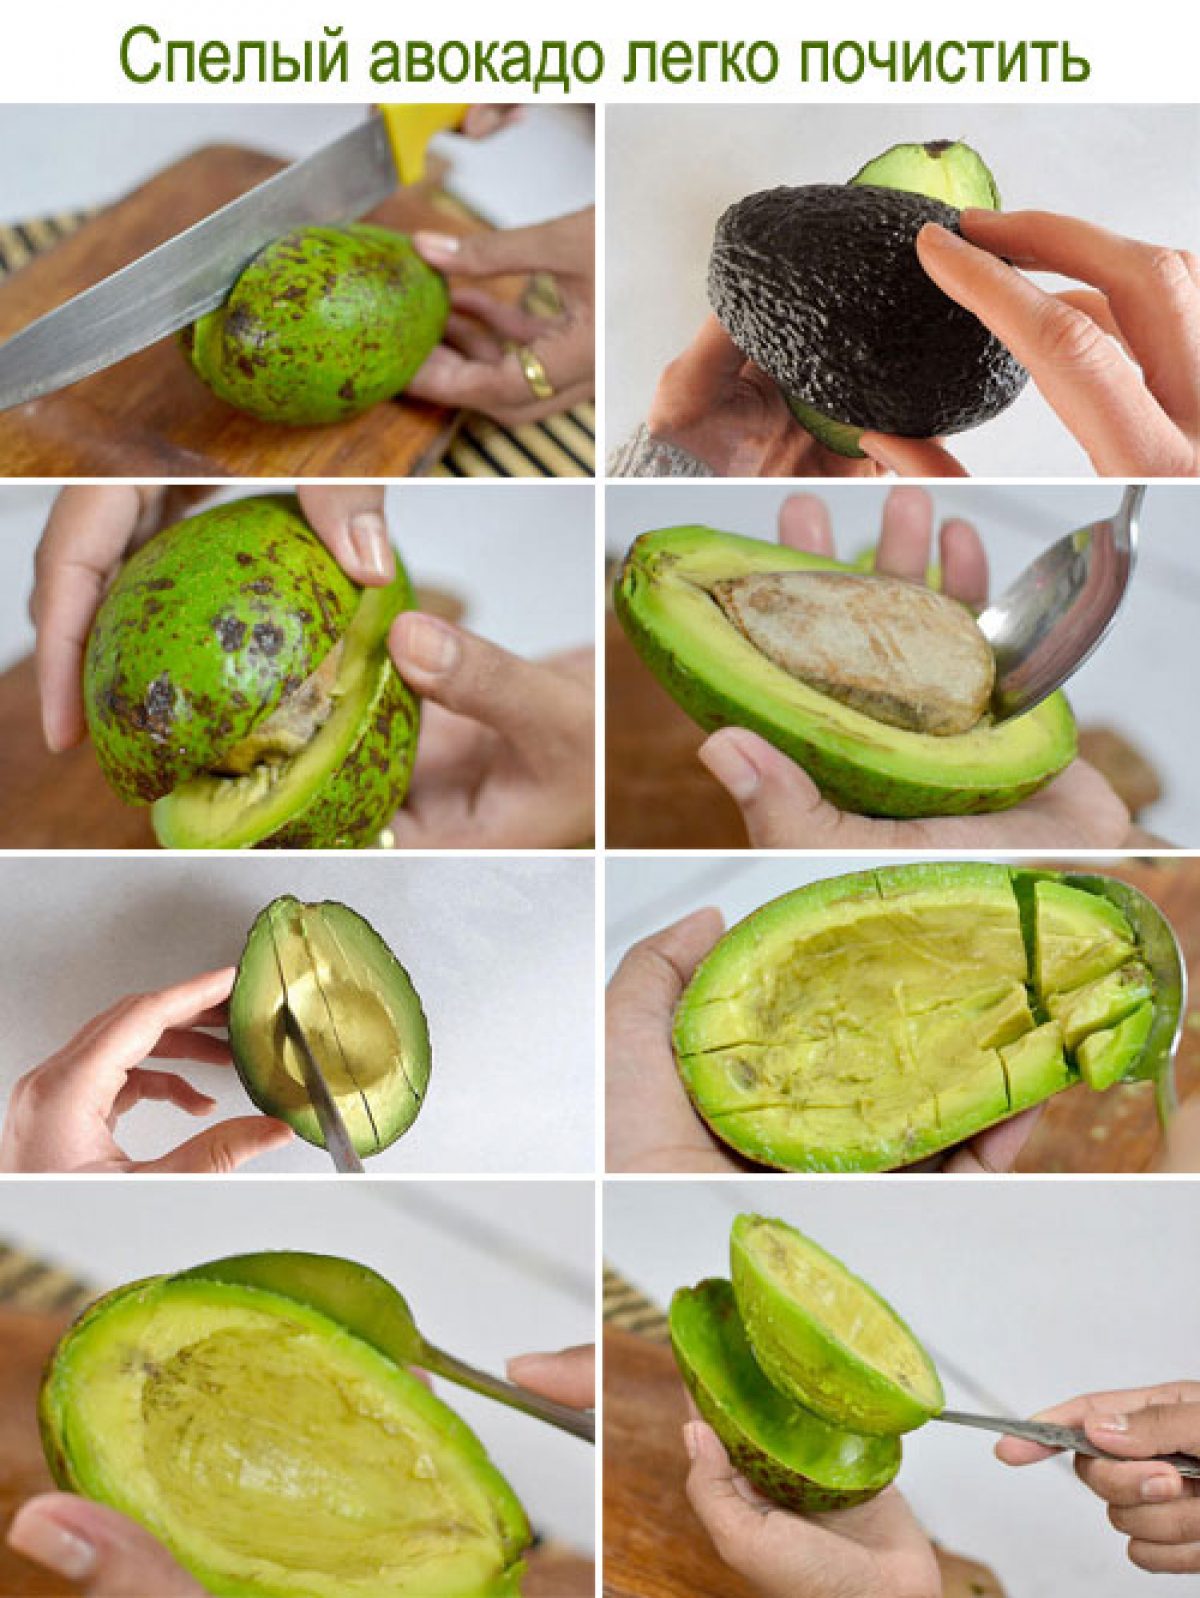 Что делать чтобы авокадо дозрело. Как чистить авокадо. Как почистить авокадо. Как кушать авокадо. Как кушать авокадо правильно.